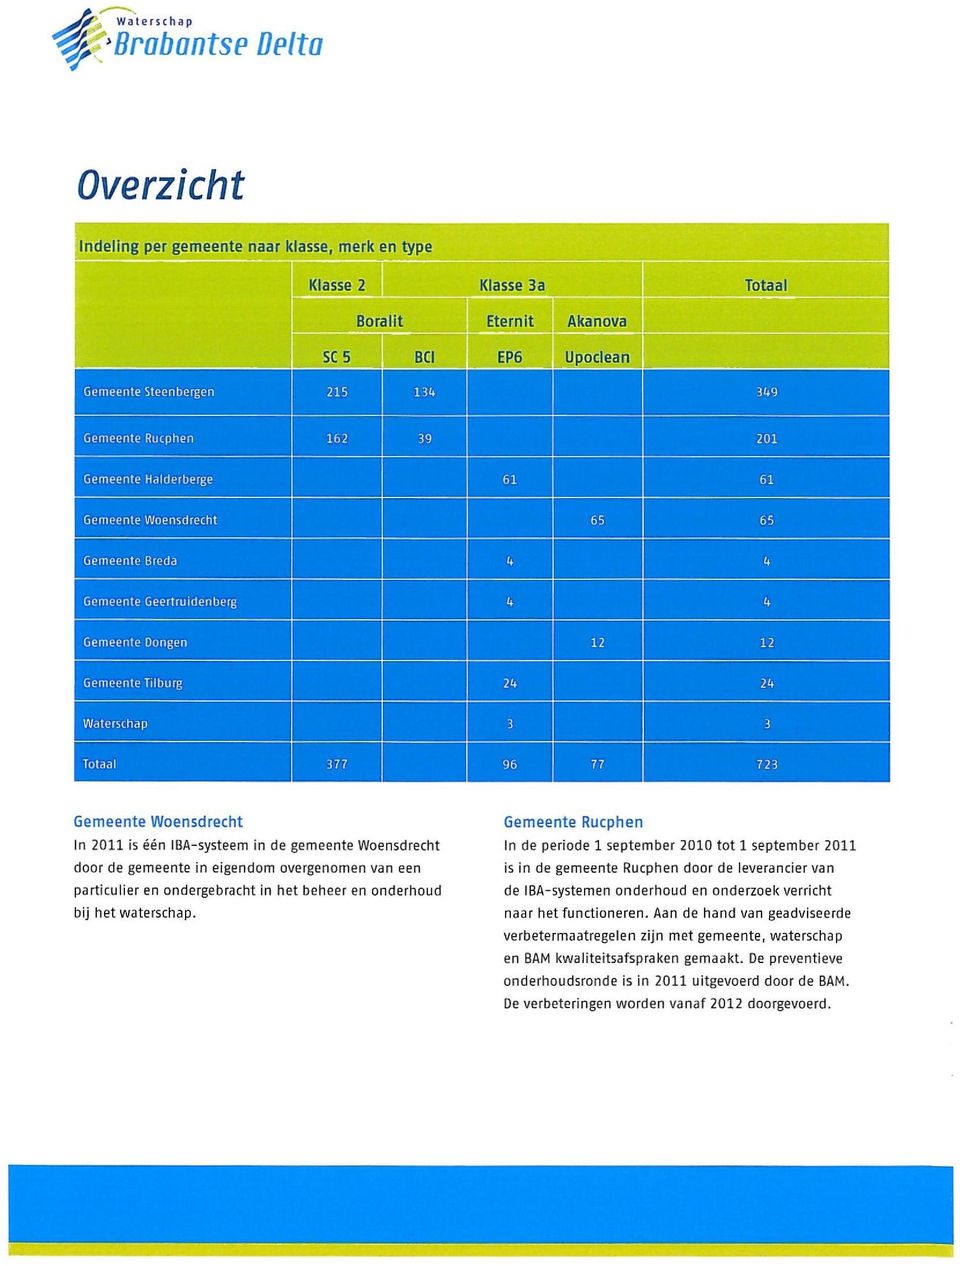 77 Gemeente Woensdrecht In 2011 is één IBA-systeem in de gemeente Woensdrecht door de gemeente in eigendom overgenomen van een particulier en ondergebracht in het beheer en onderhoud bij het